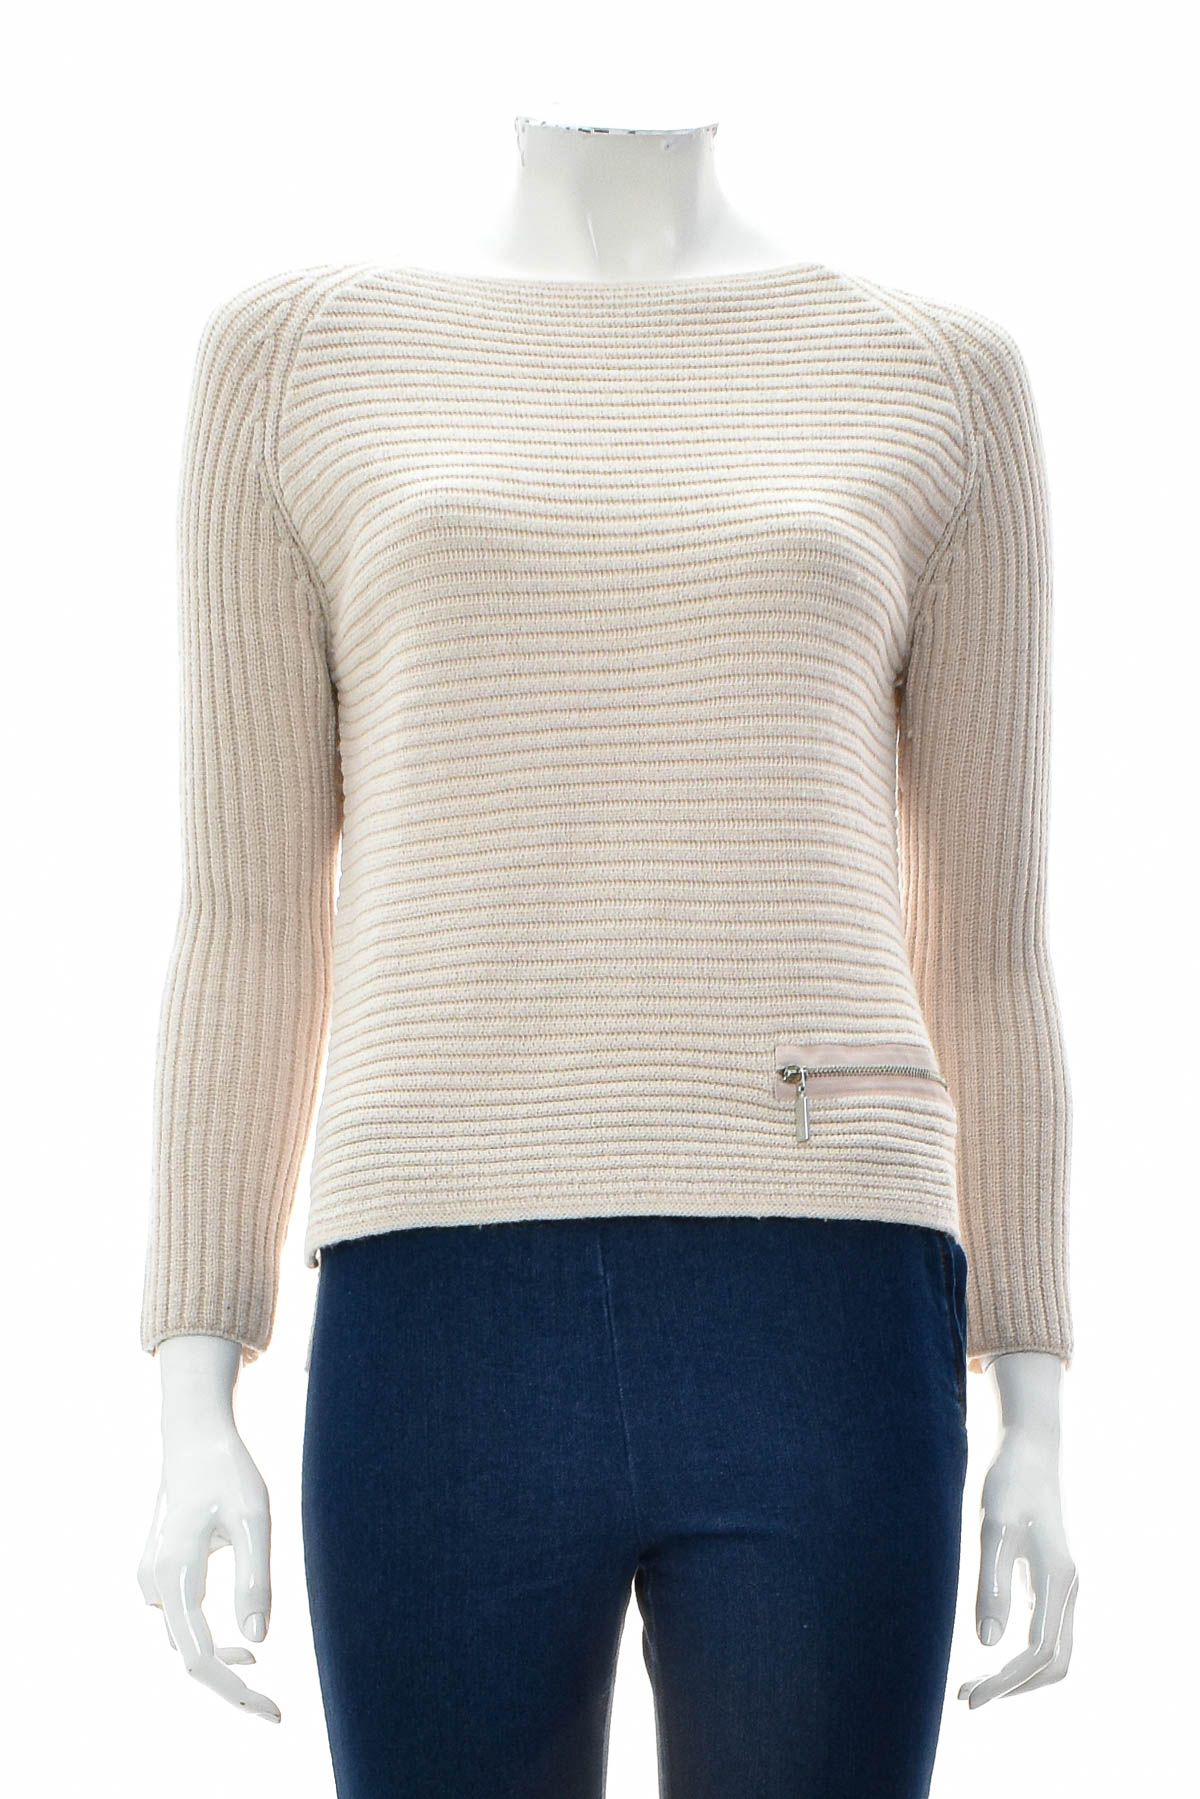 Women's sweater - Monari - 0